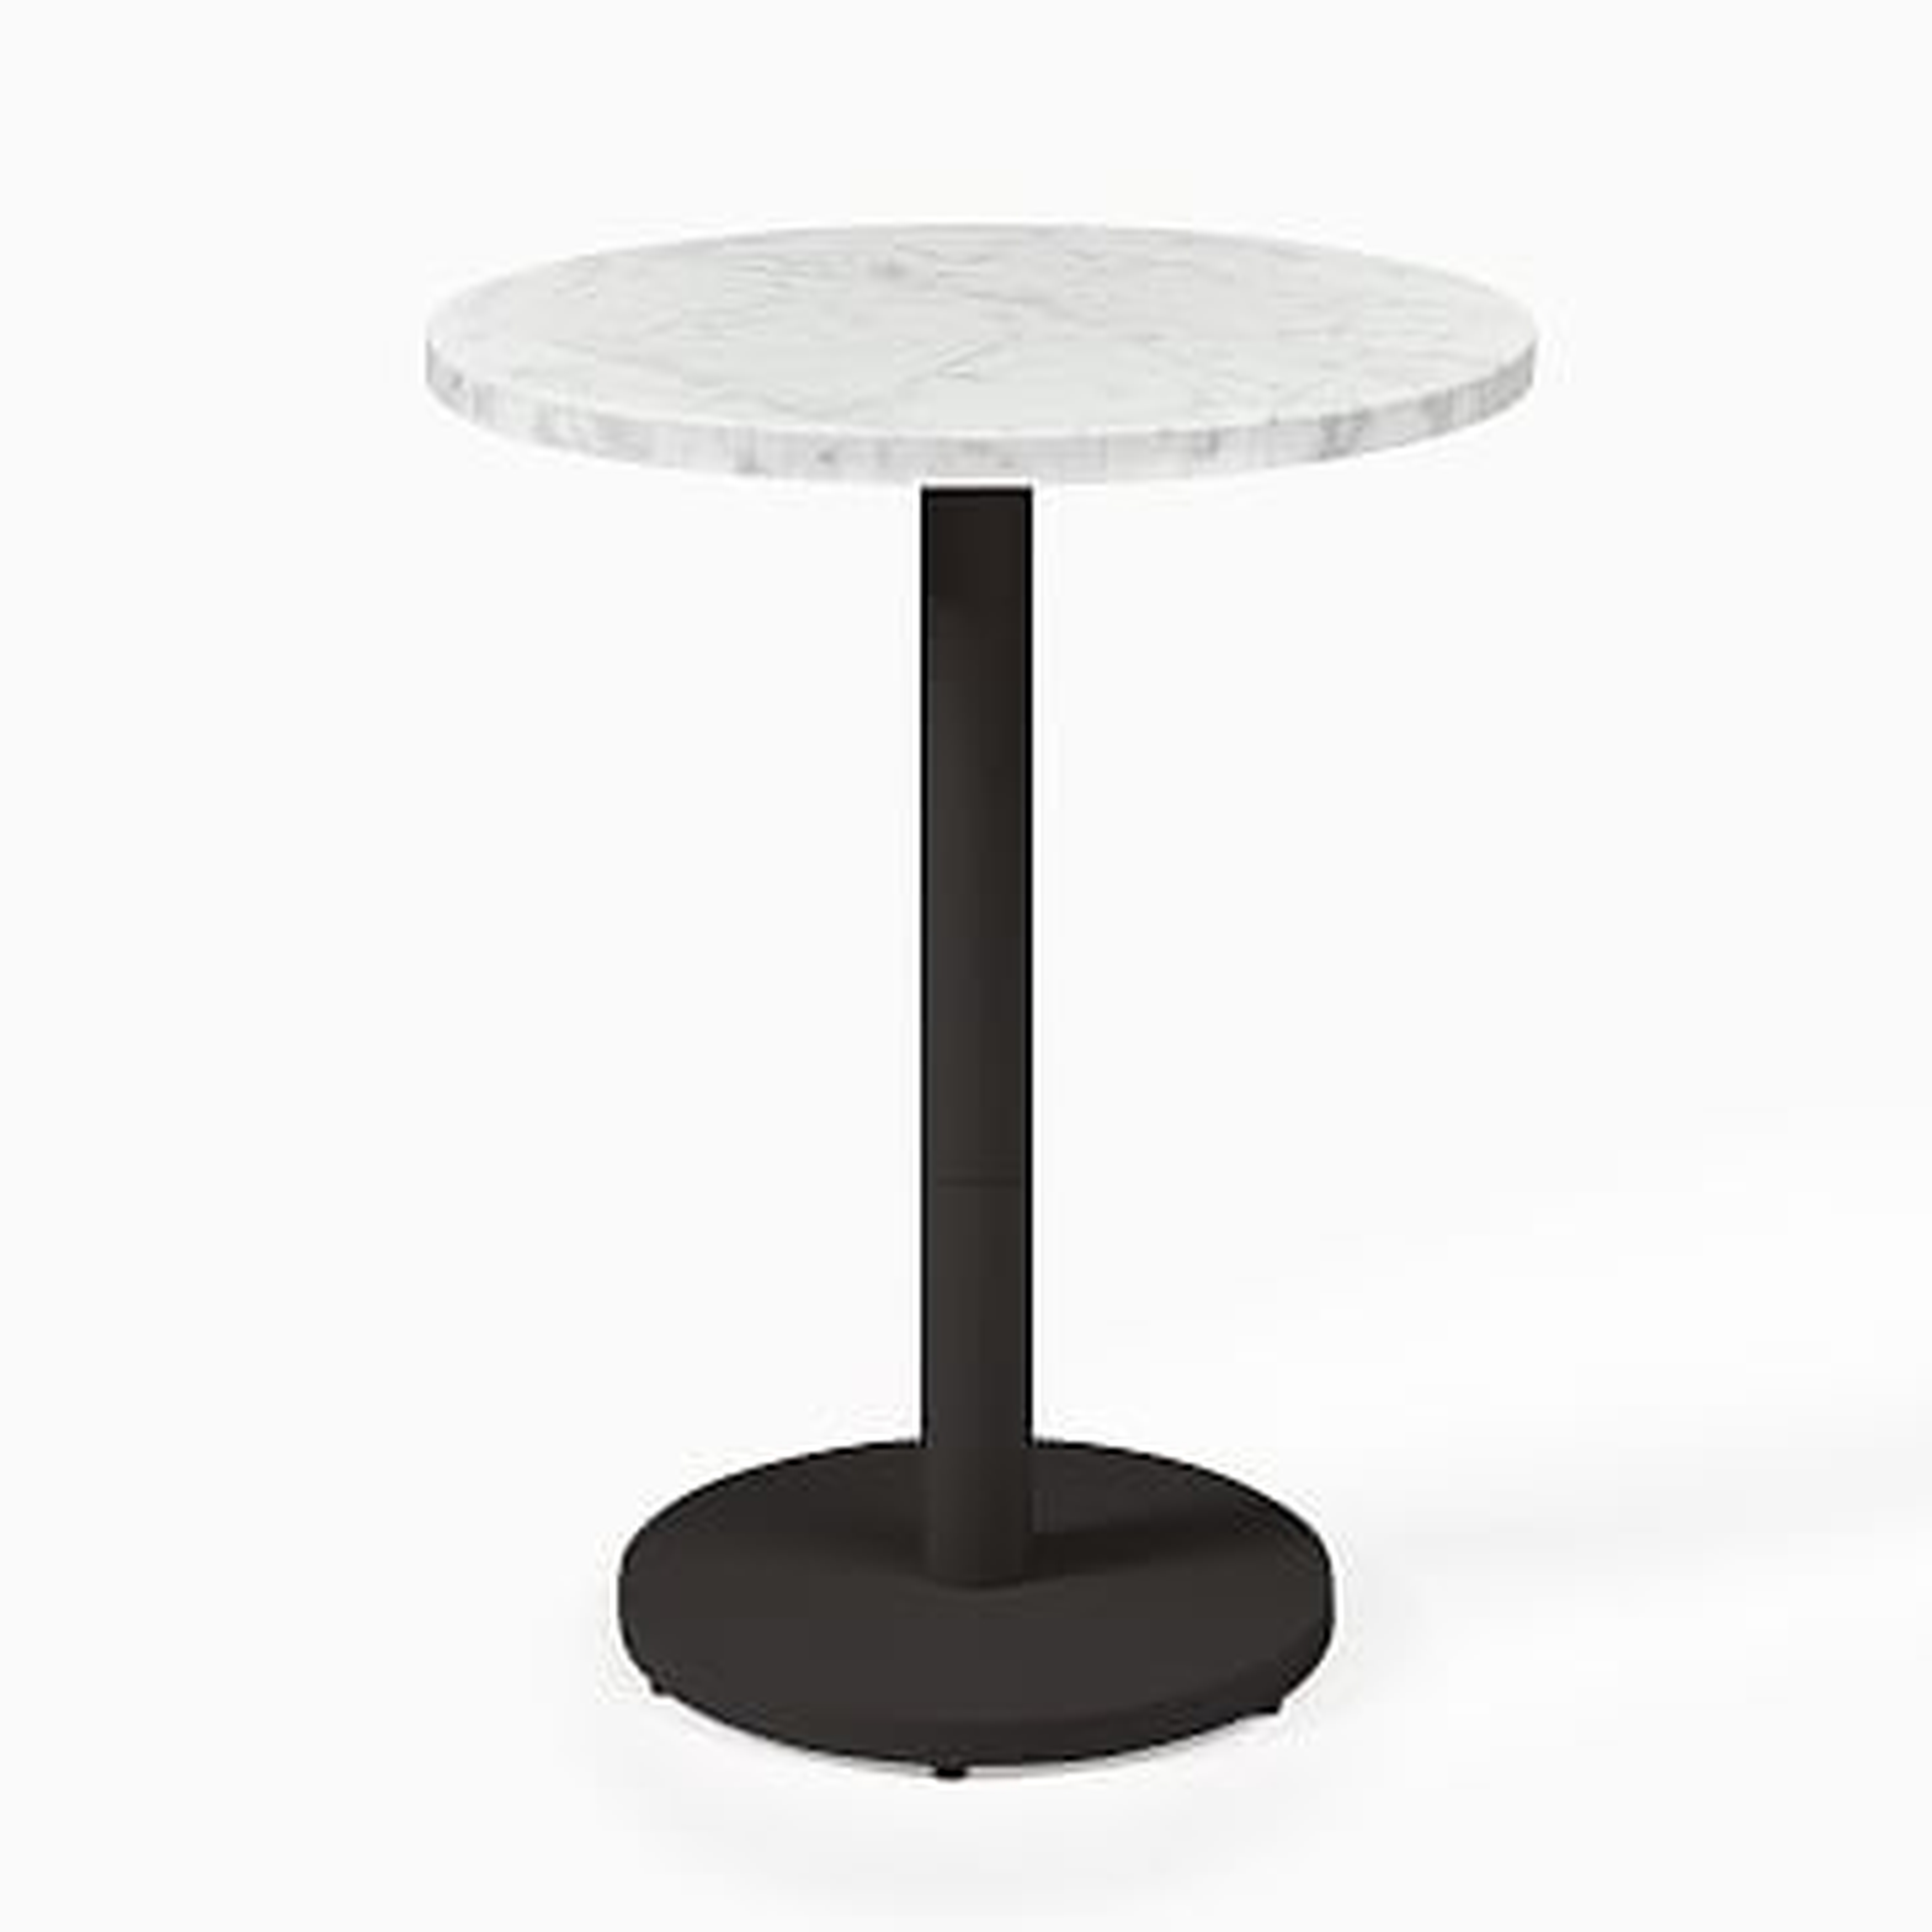 White Marble Round Bistro Table, 24", Orbit Dining, Bronze - West Elm